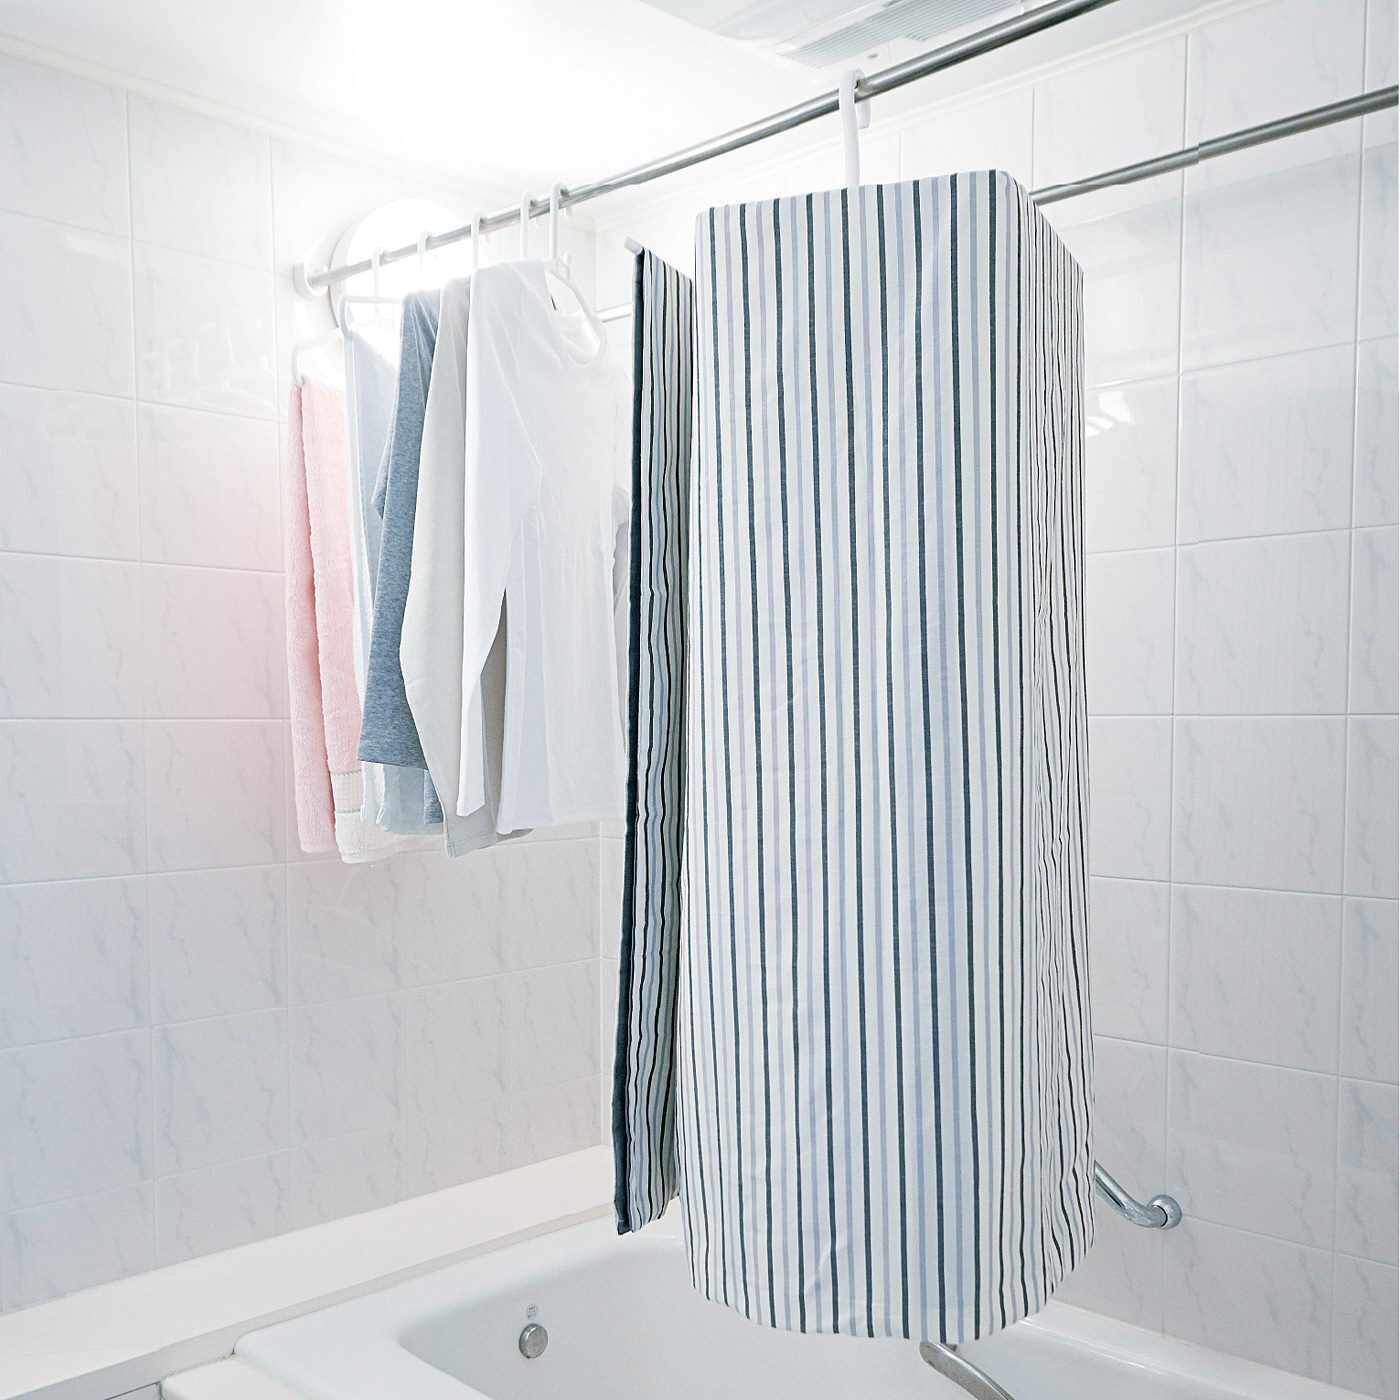 フェリシモの雑貨 Kraso|くるくる通すだけでシーツやバスタオルを省スペースで干せるラウンドハンガーの会|浴室や室内干しのスペース効率が大幅にアップ。